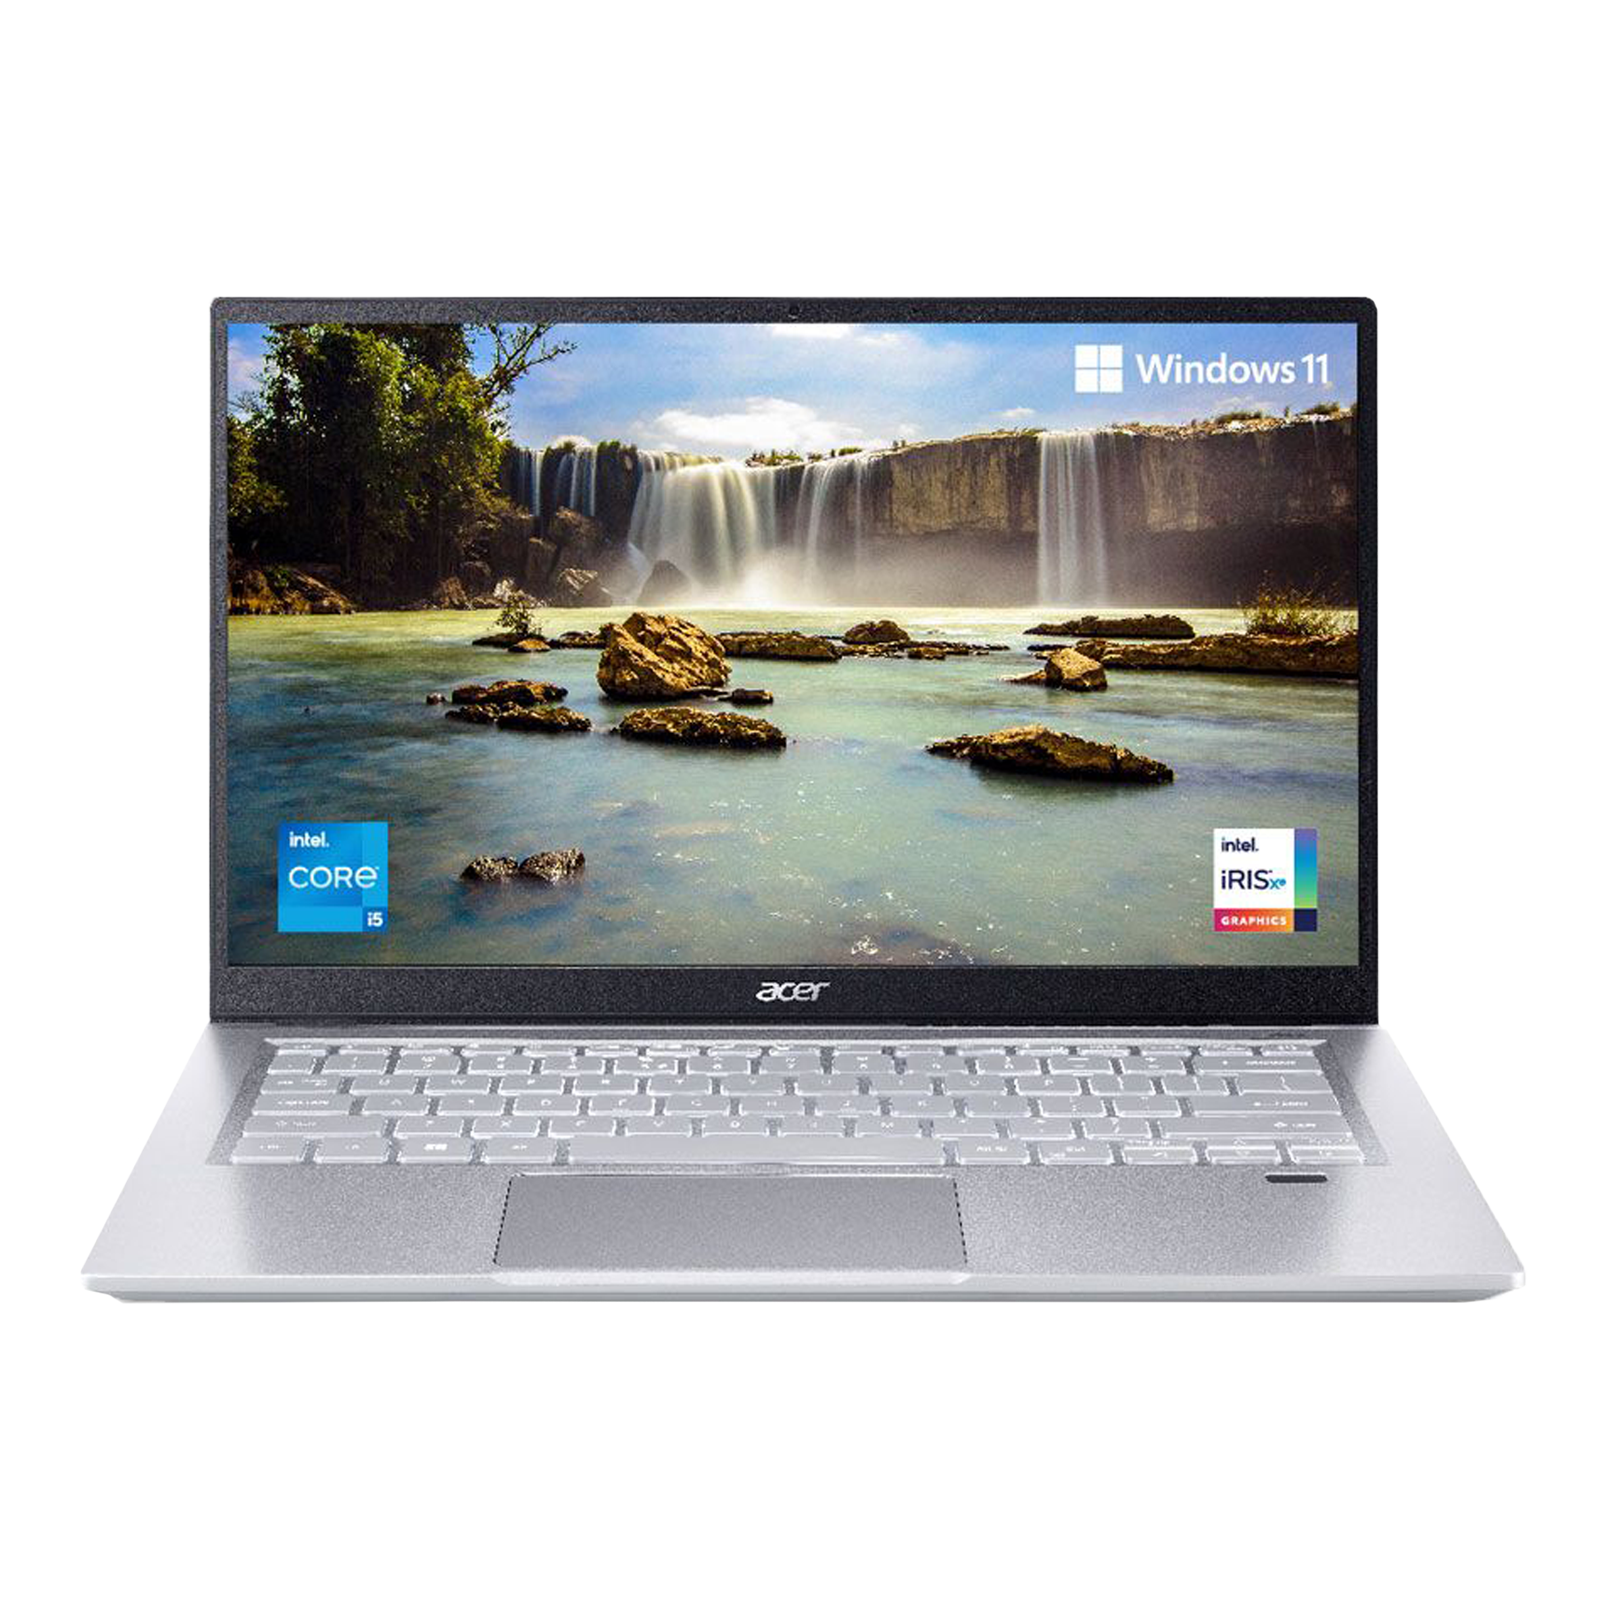 Intel core i5 ноутбук отзывы. Acer Swift 3 Intel EVO. Acer Swift 3 sf314-59-58jm Aqua Blue.